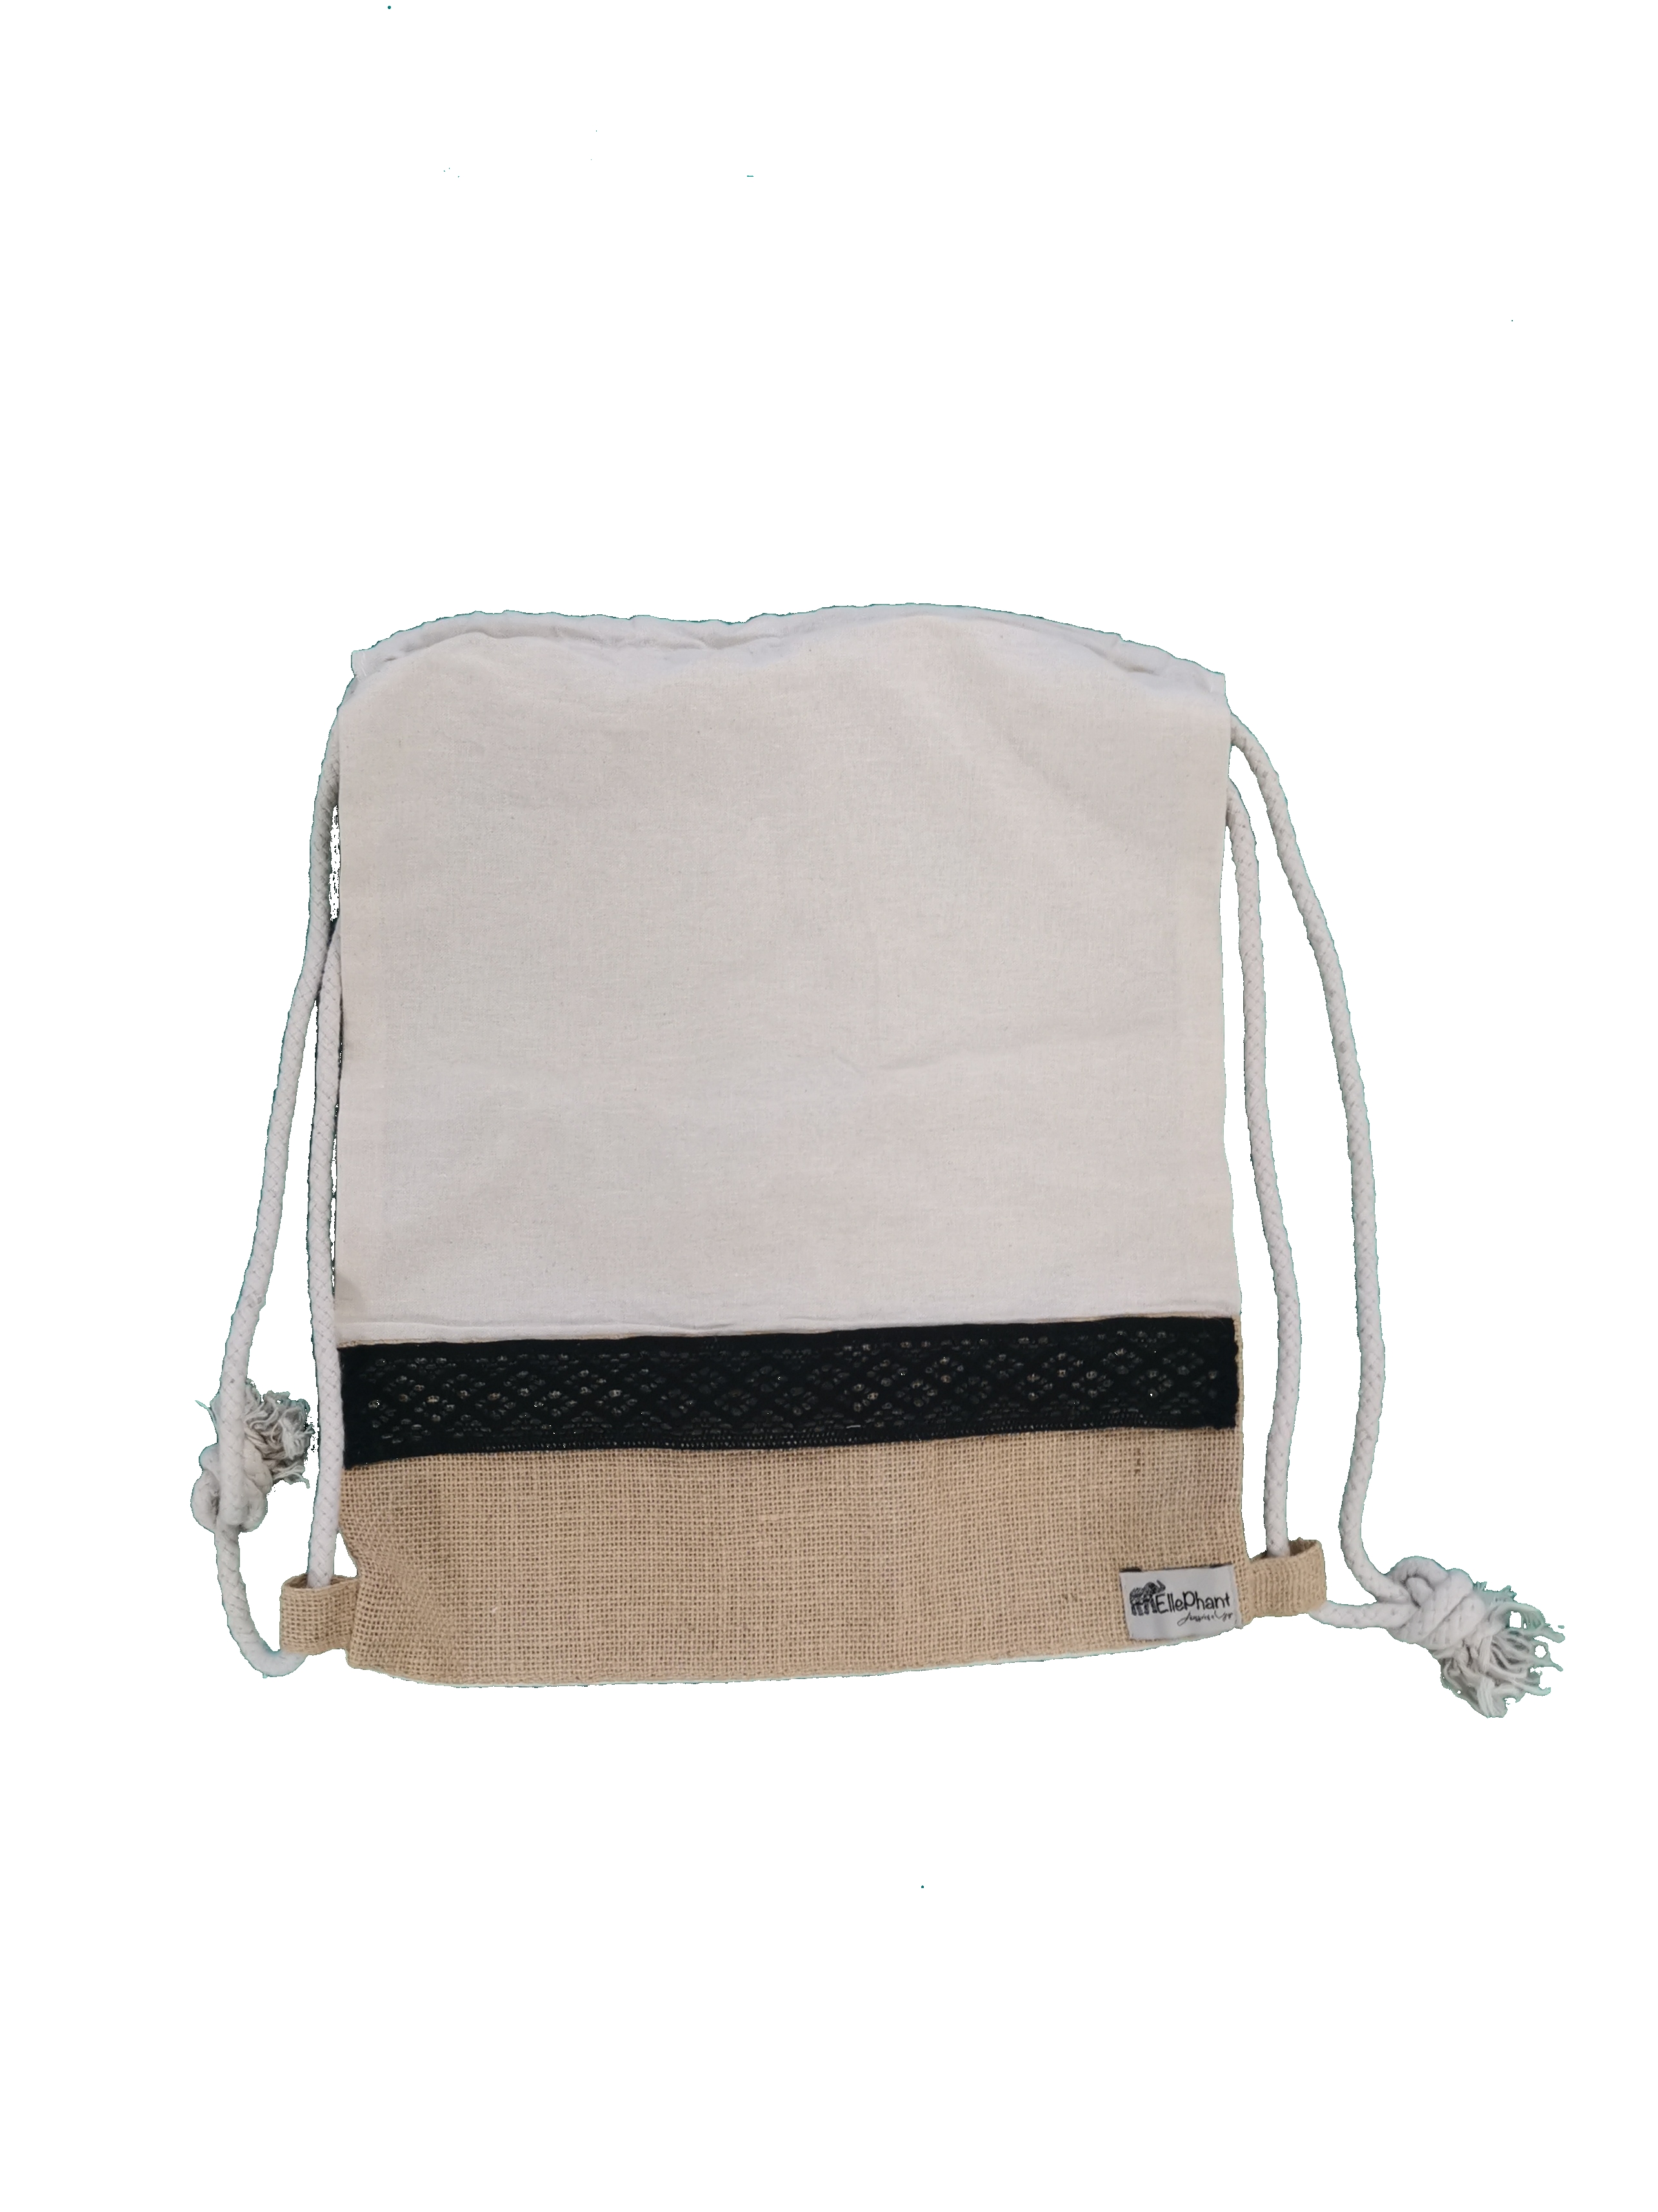 Mochila/saco de algodão c/barra em juta (41 x 34 cm)